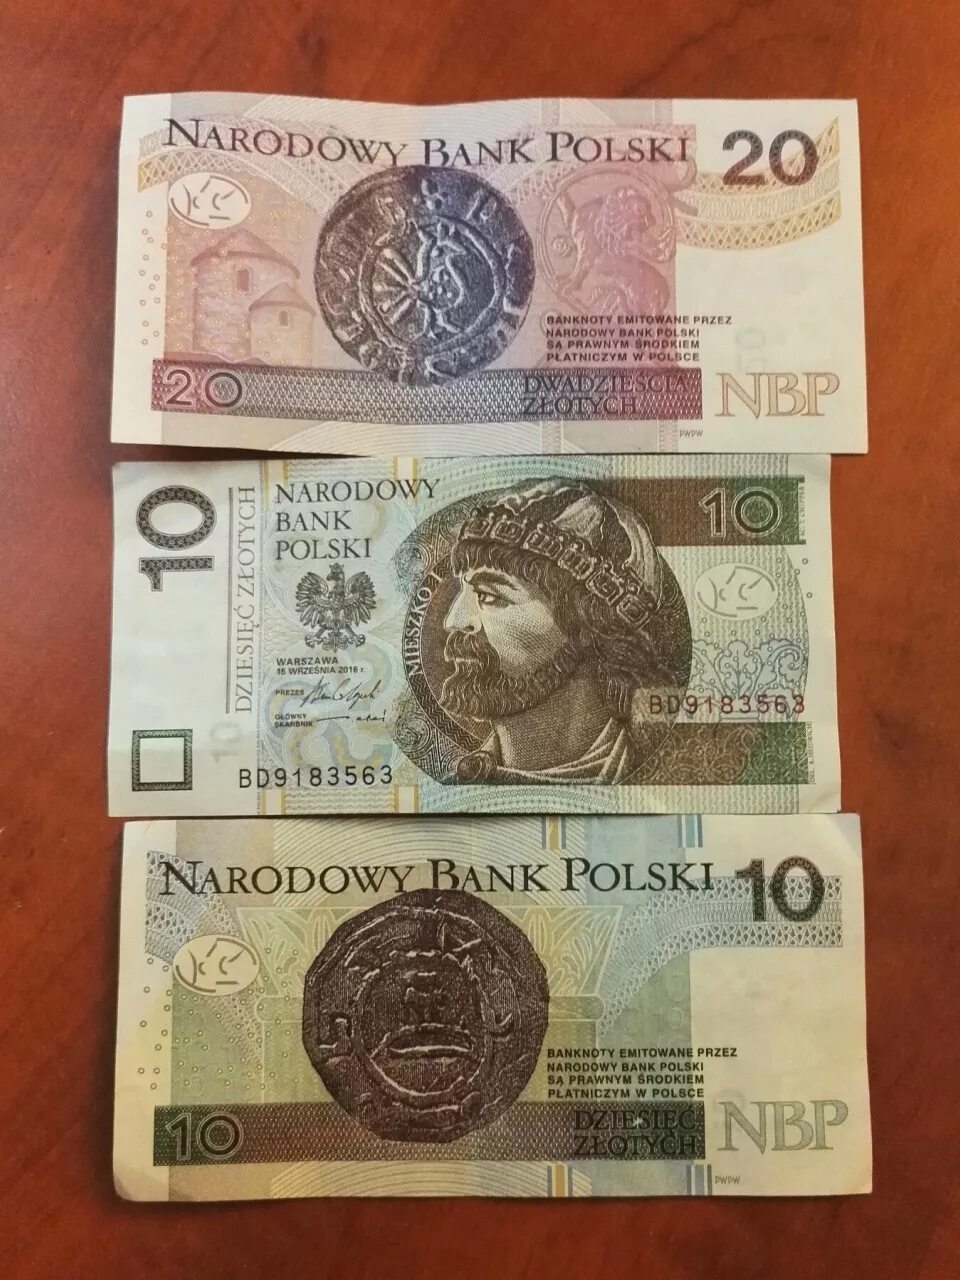 Польские деньги купюры. Польский злотый. Злотый валюта. Валюта Польши. Перевести польские деньги